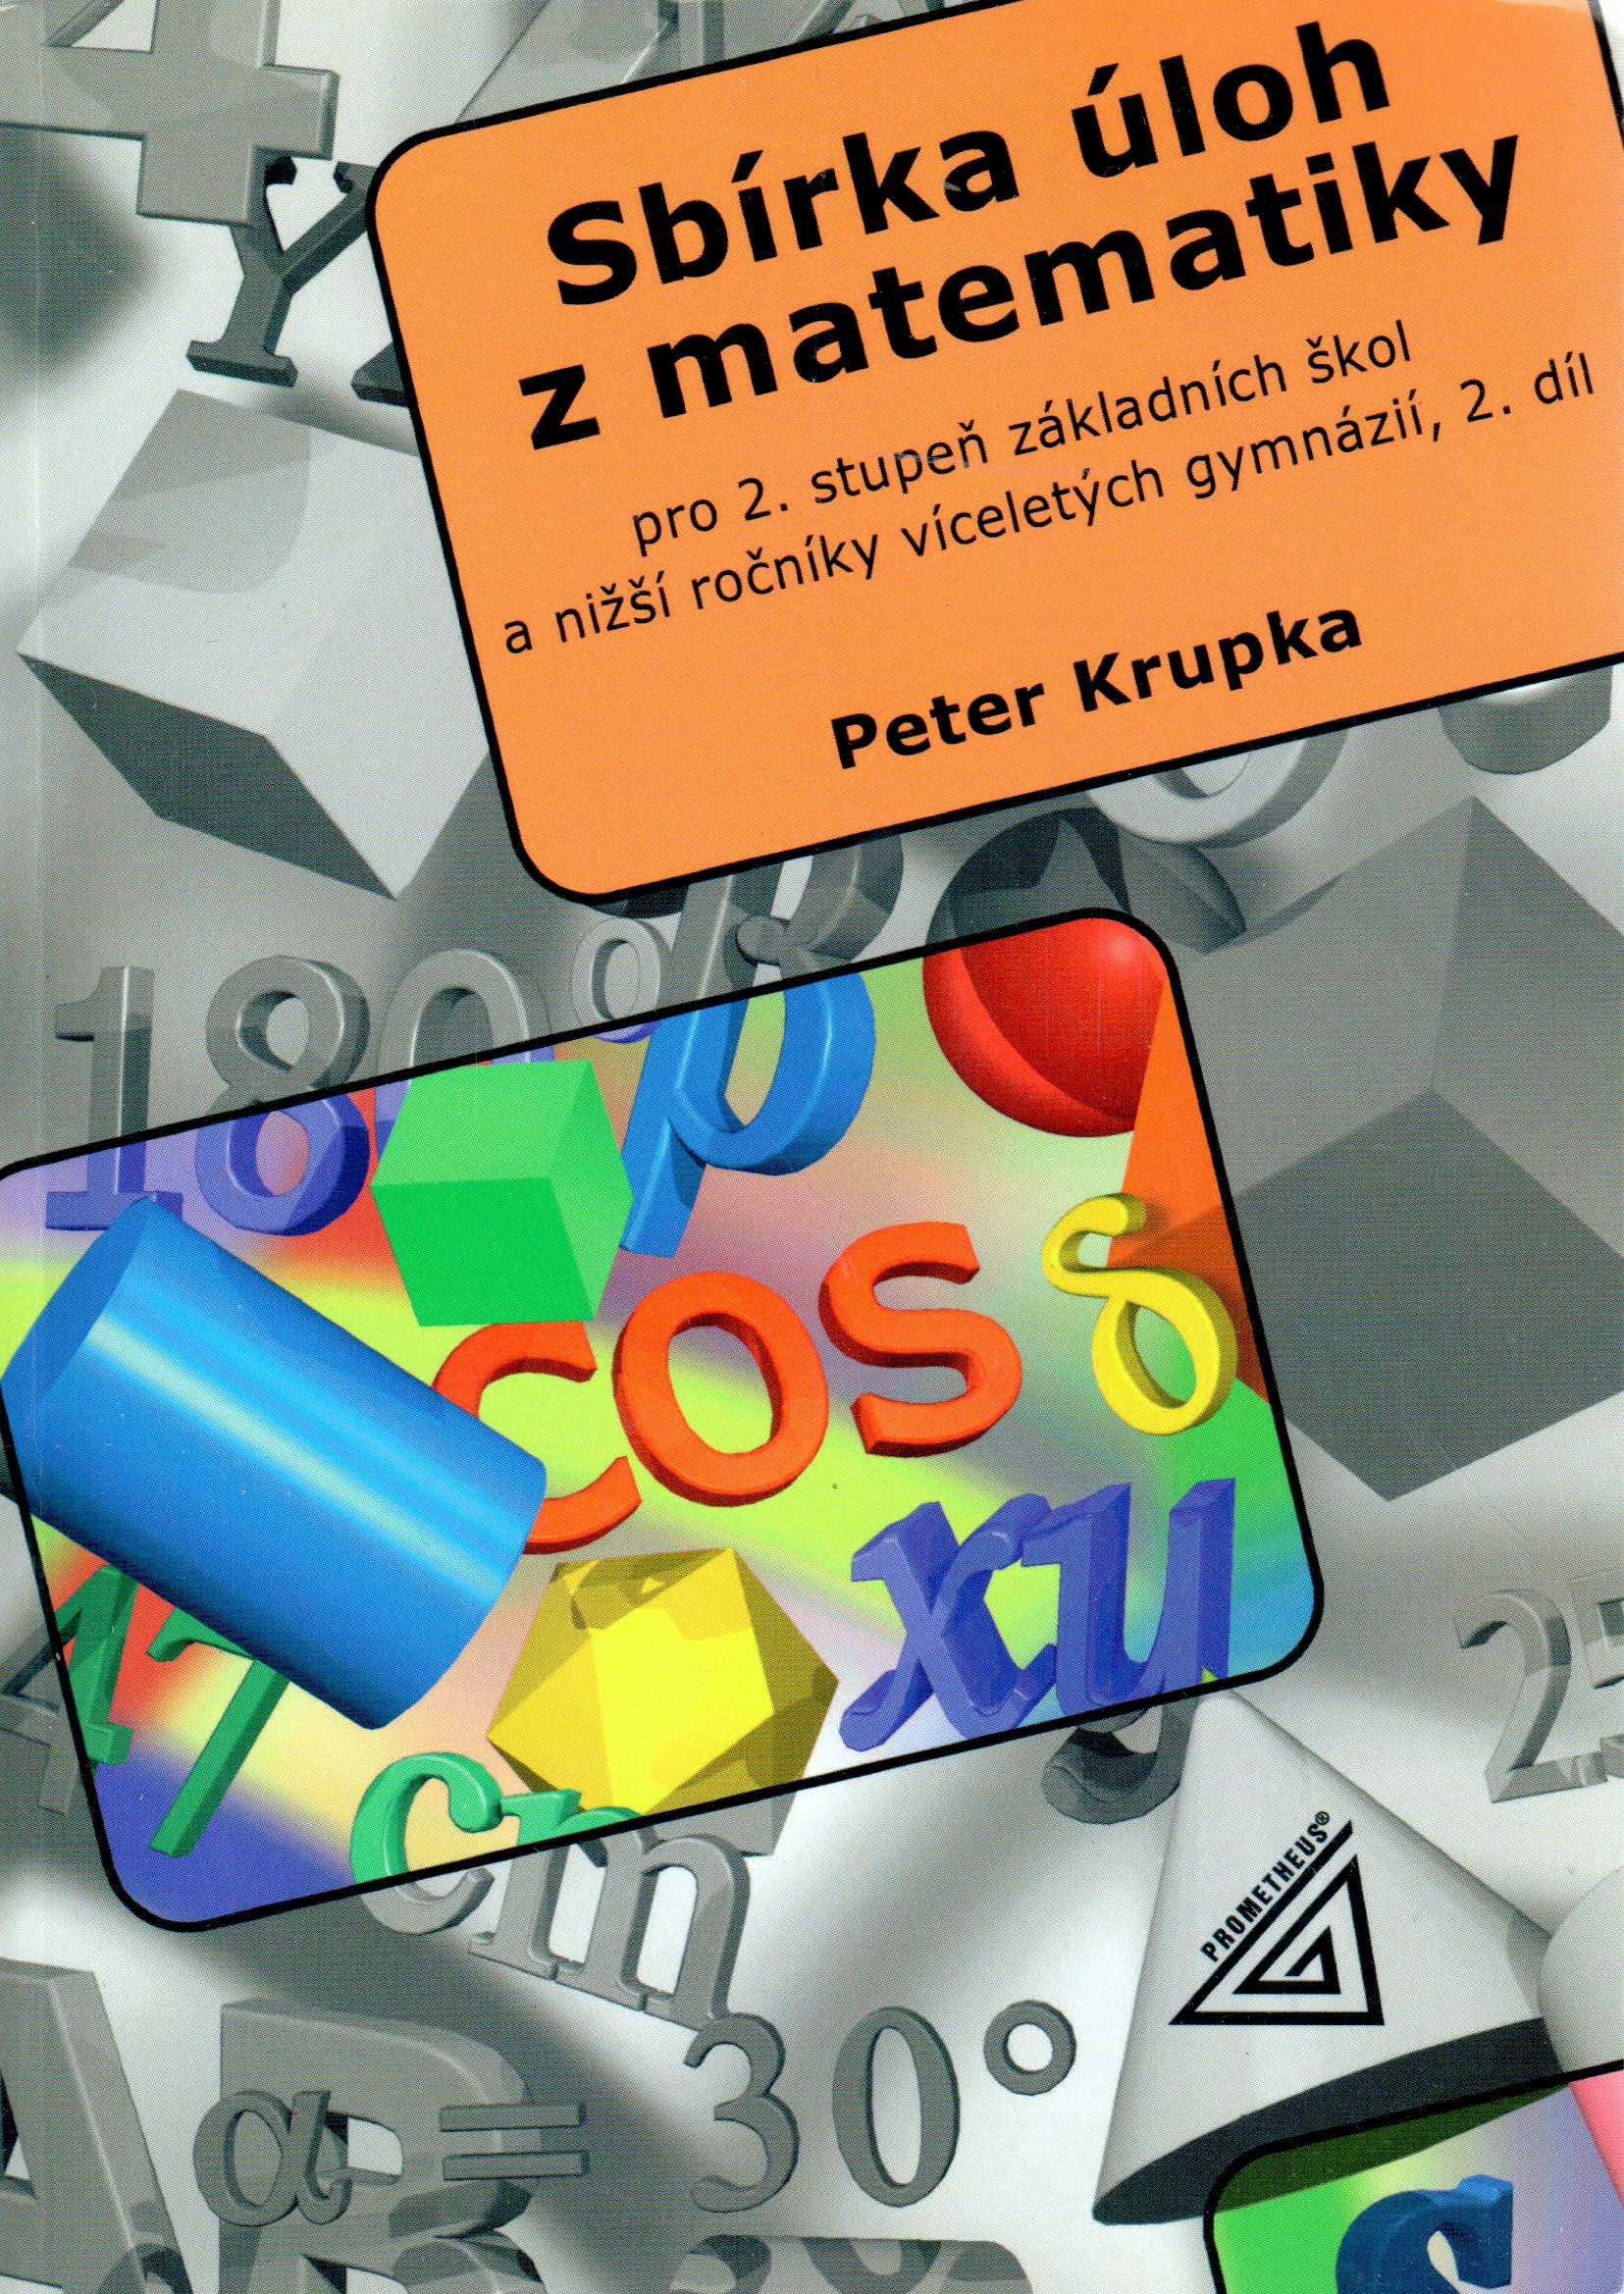 Sbírka úloh z matematiky pro 2. stupeň základních škol a nižší ročníky víceletých gymnázií (2. díl) - Náhled učebnice